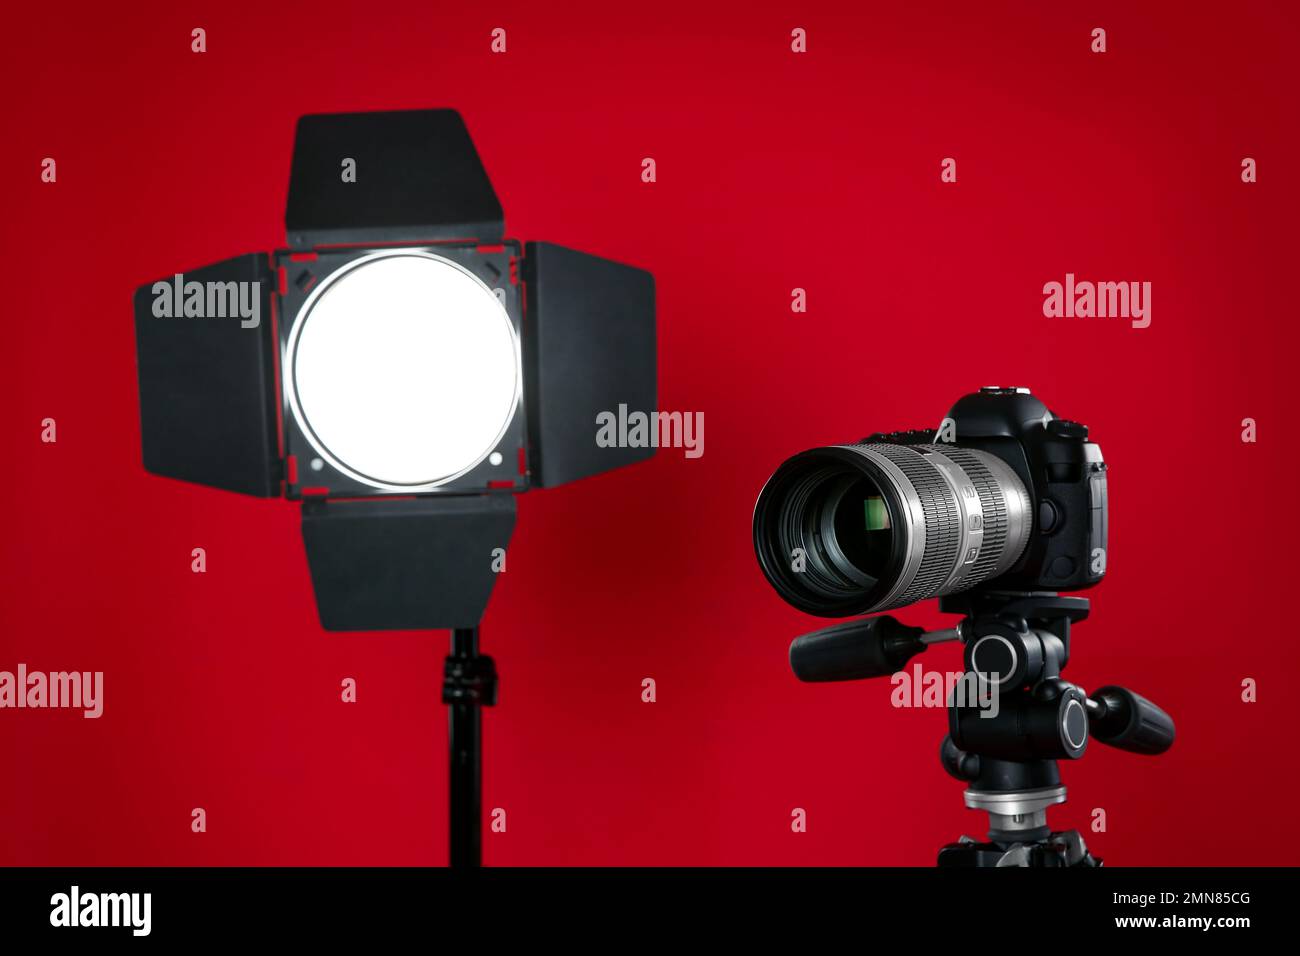 Lentes y cámaras digitales profesionales Fotografía de stock - Alamy